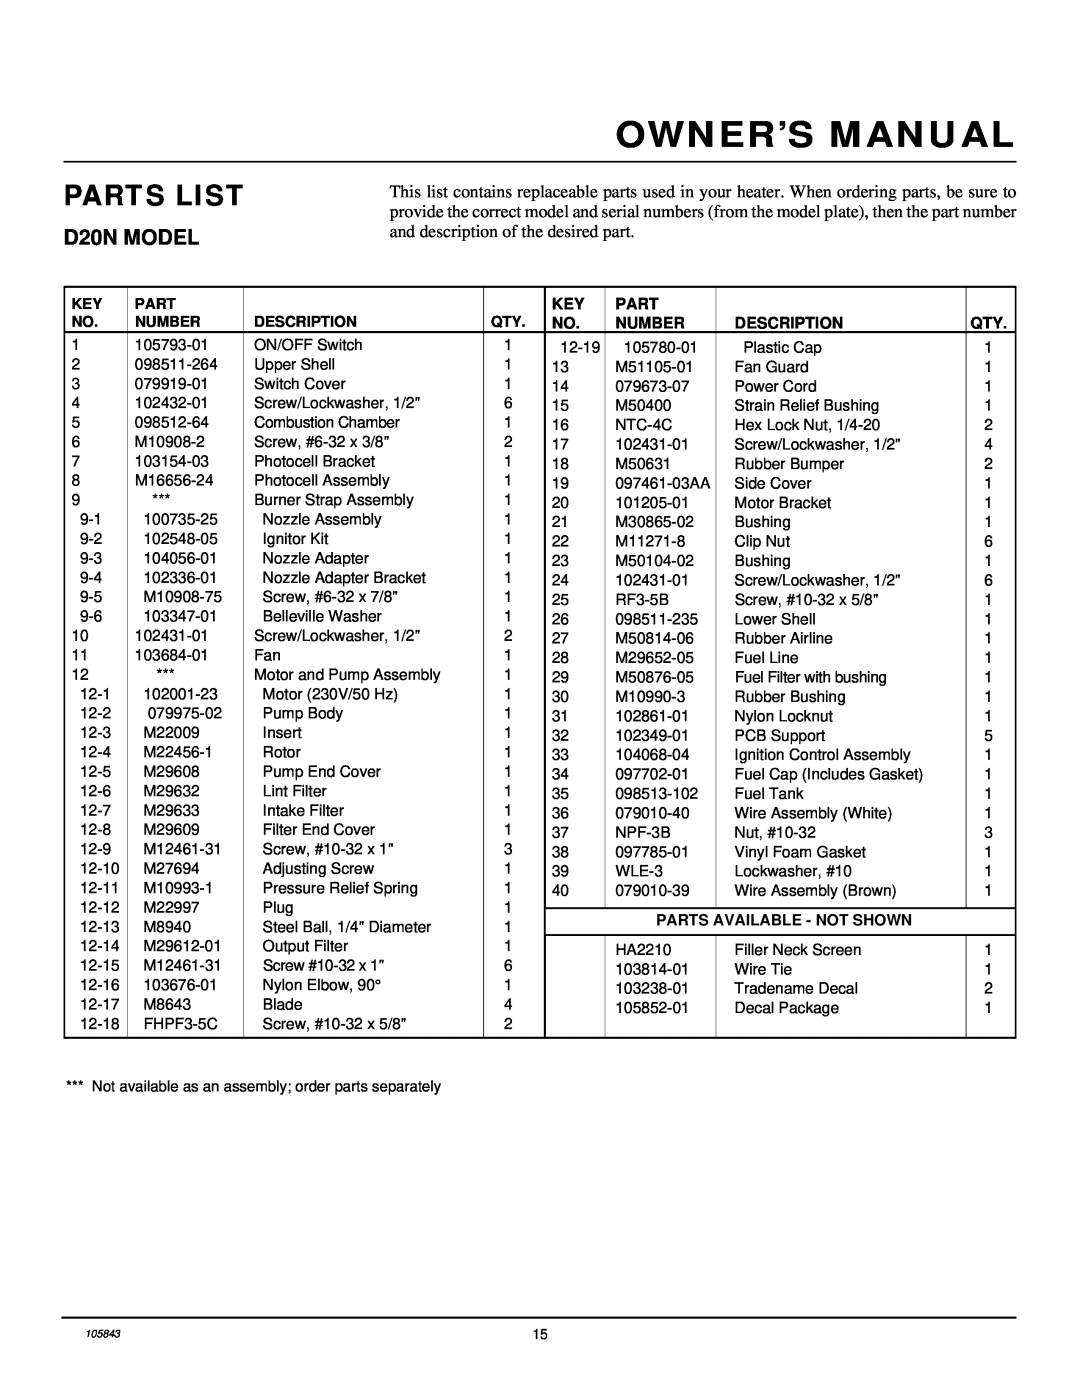 Desa D44N, D30N owner manual Parts List, D20N MODEL, Number, Description, Parts Available - Not Shown 